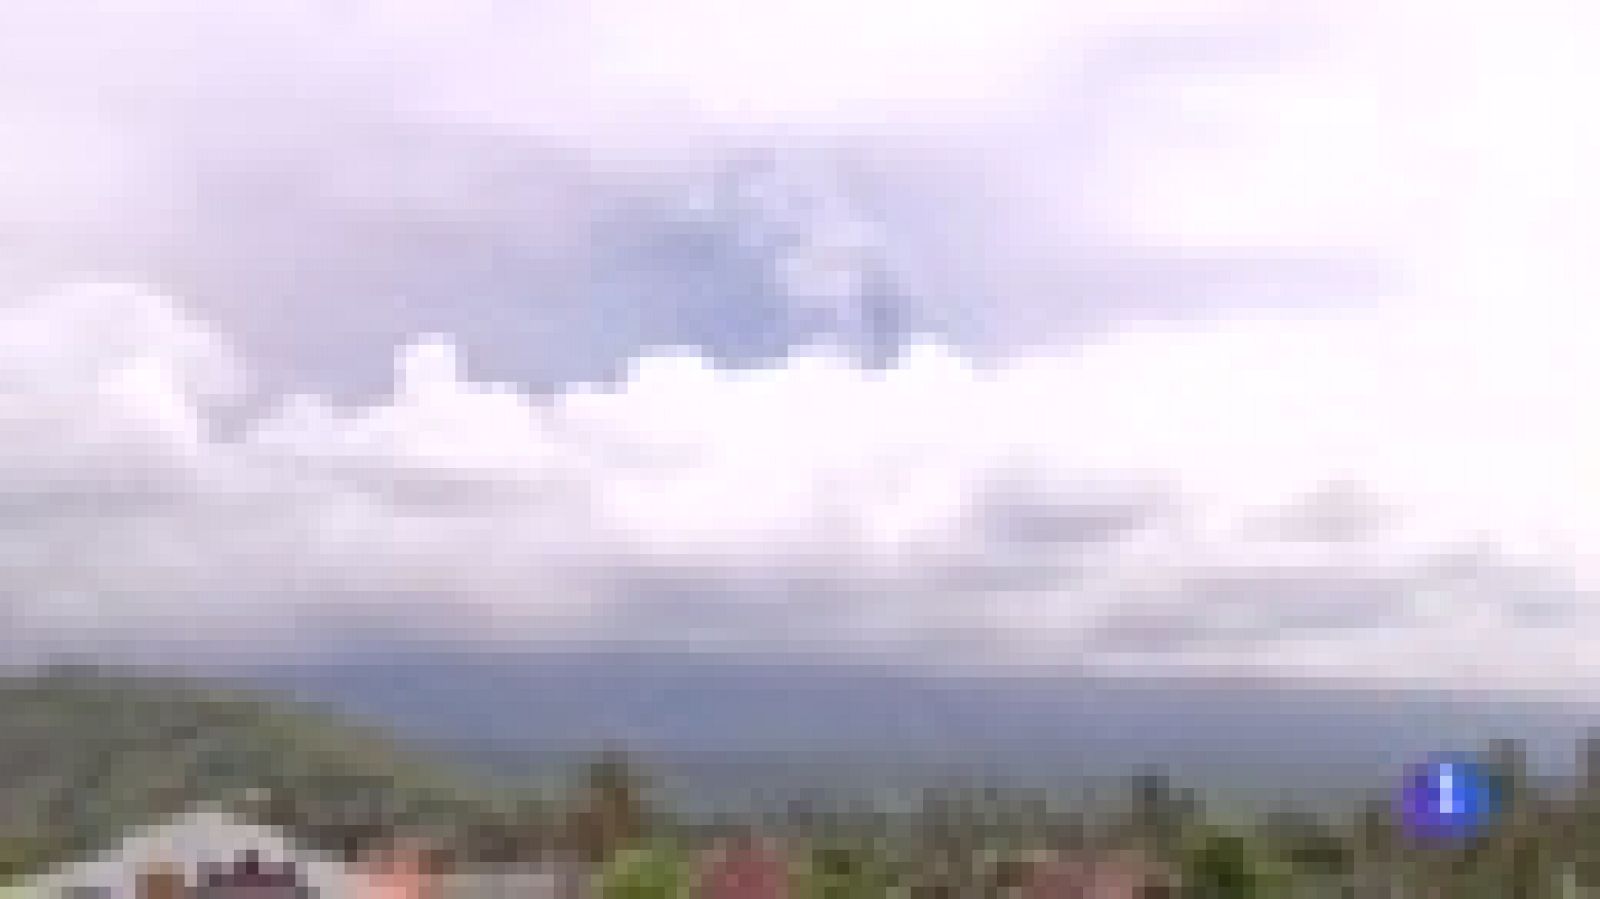 La Agencia para el Desastre de Indonesia ha elevado el nivel de alerta al máximo ante una "inminente erupción" del volcán Agung en Bali y ha ordenado la evacuación de 100.000 personas, todos los residentes en un radio de entre 8 y 10 kilómetros del v